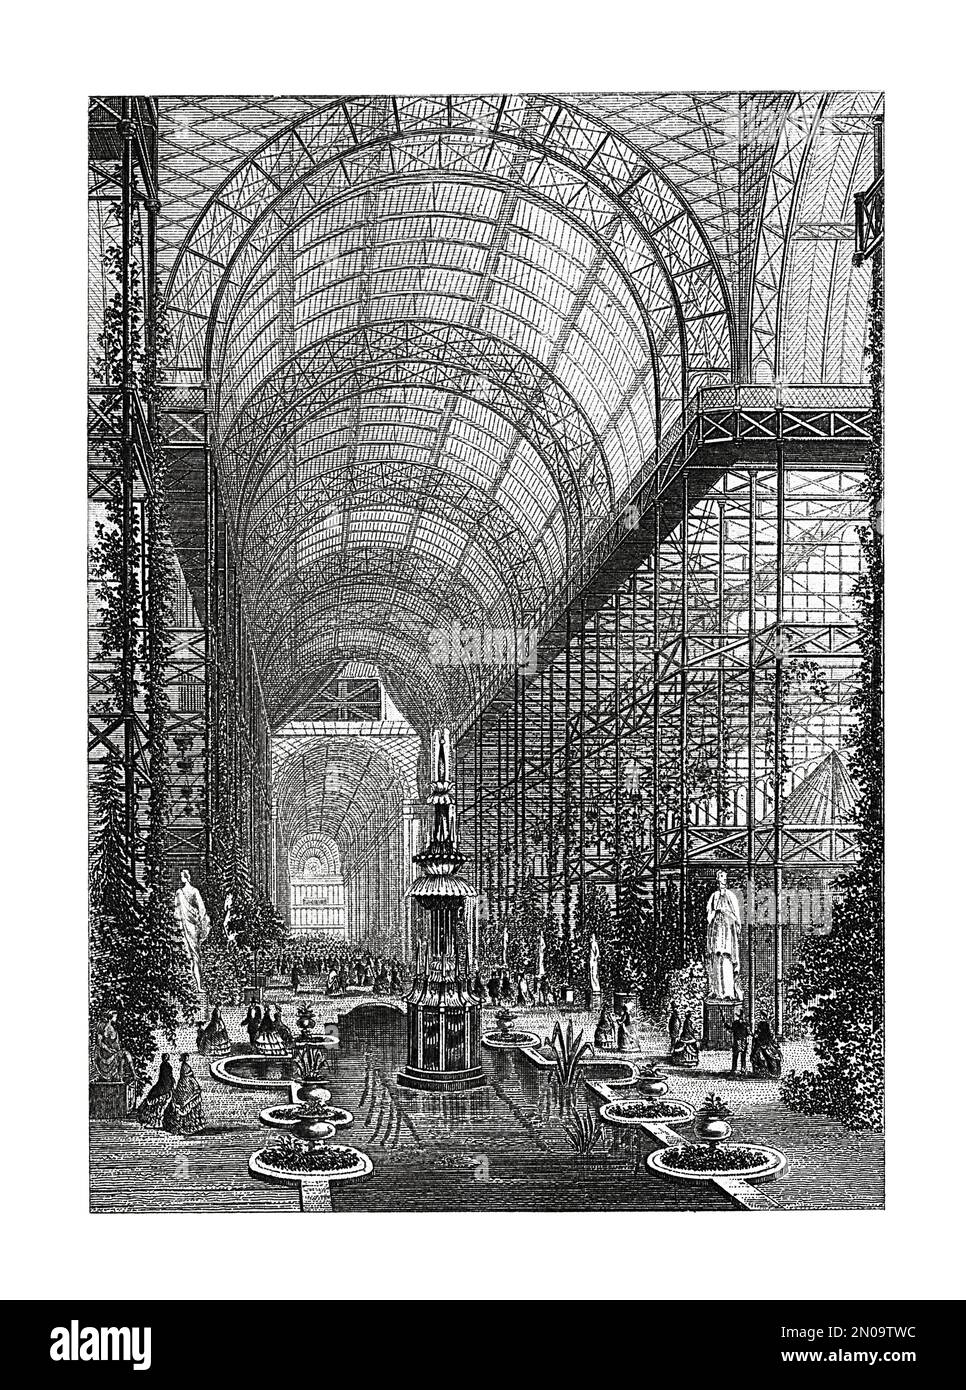 Incisione del 19th° secolo raffigurante il Crystal Palace di Londra. Illustrazione pubblicata in Systematischer Bilder Atlas - Bauwesen, Ikonographische Encyk Foto Stock